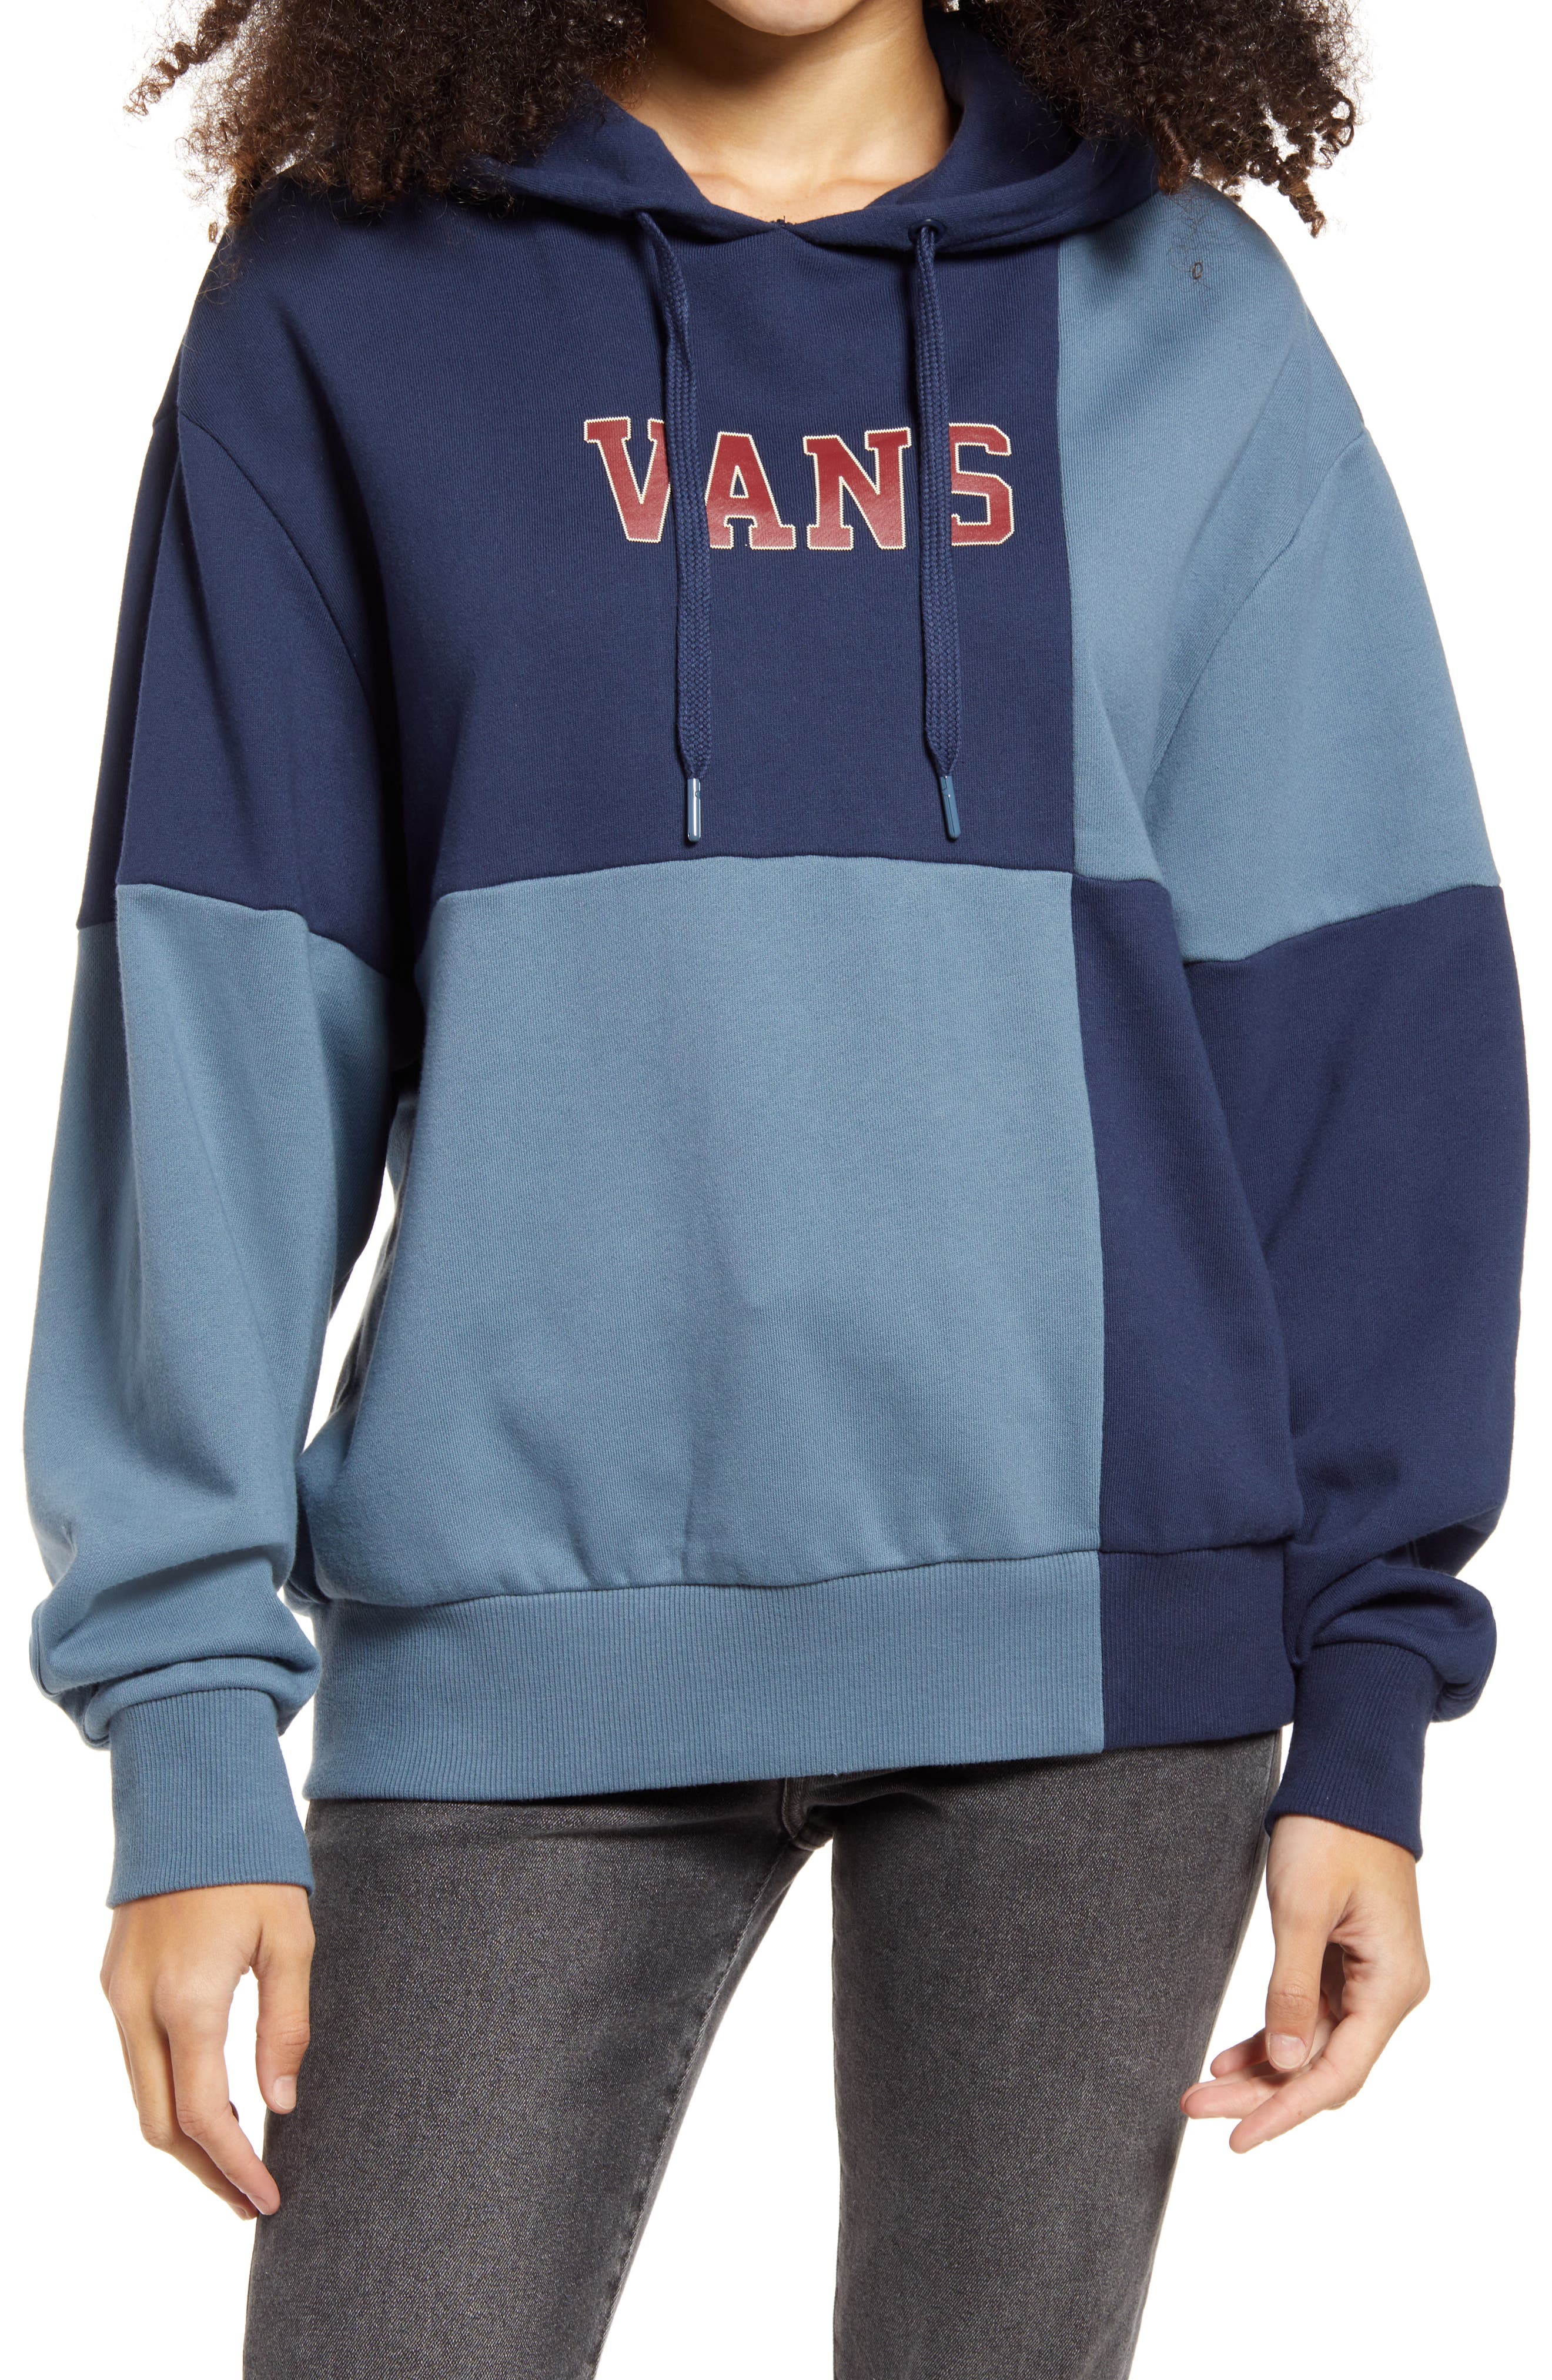 Women's Vans Sweatshirts \u0026 Hoodies 